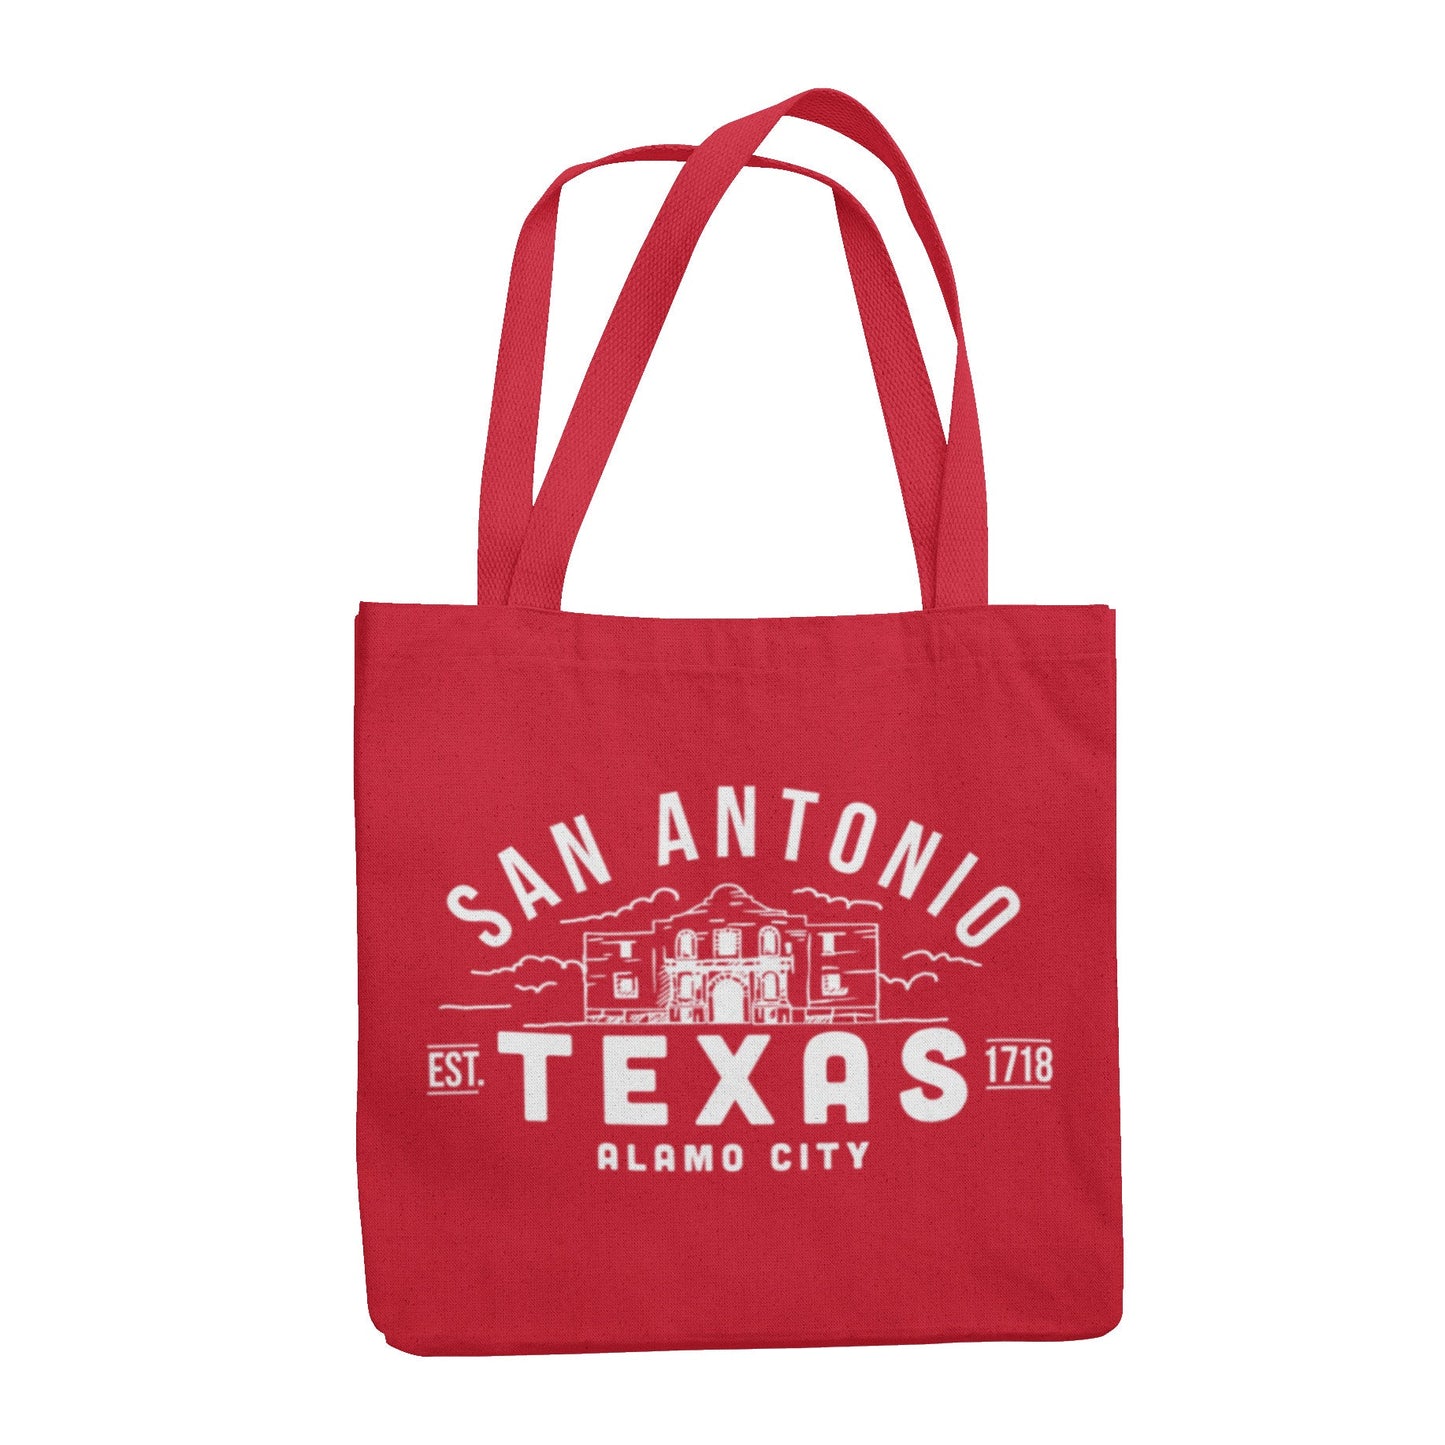 San Antonio Texas - Alamo City - Tote Bag